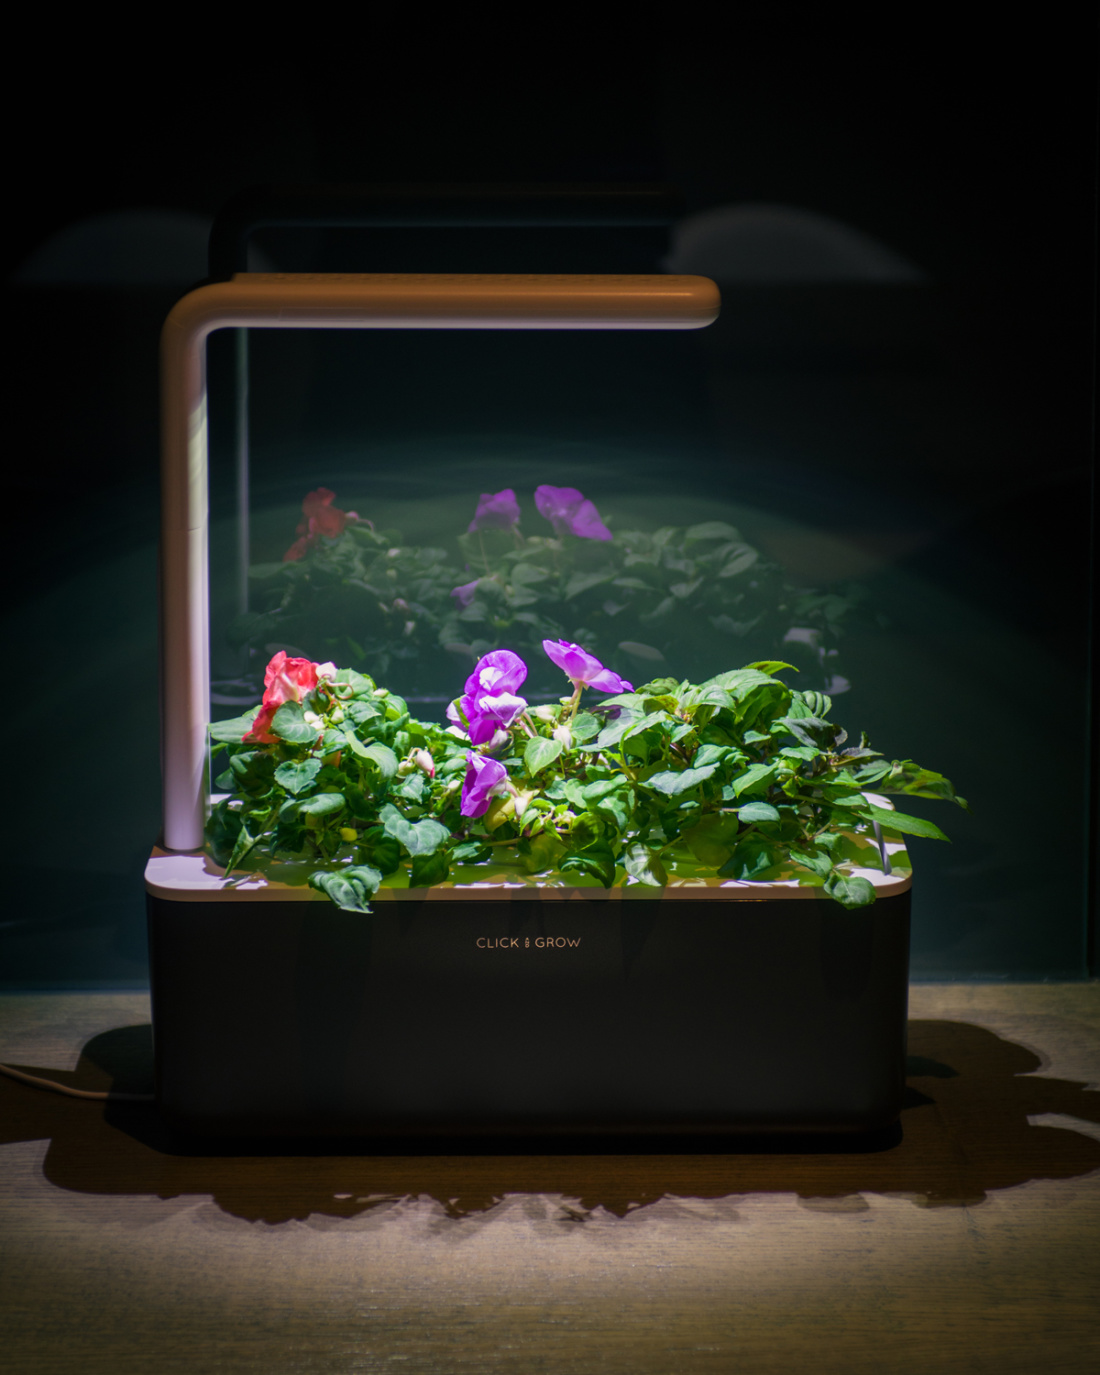 click-and-grow-smart-garden-photopoint-lemmalts-kontor